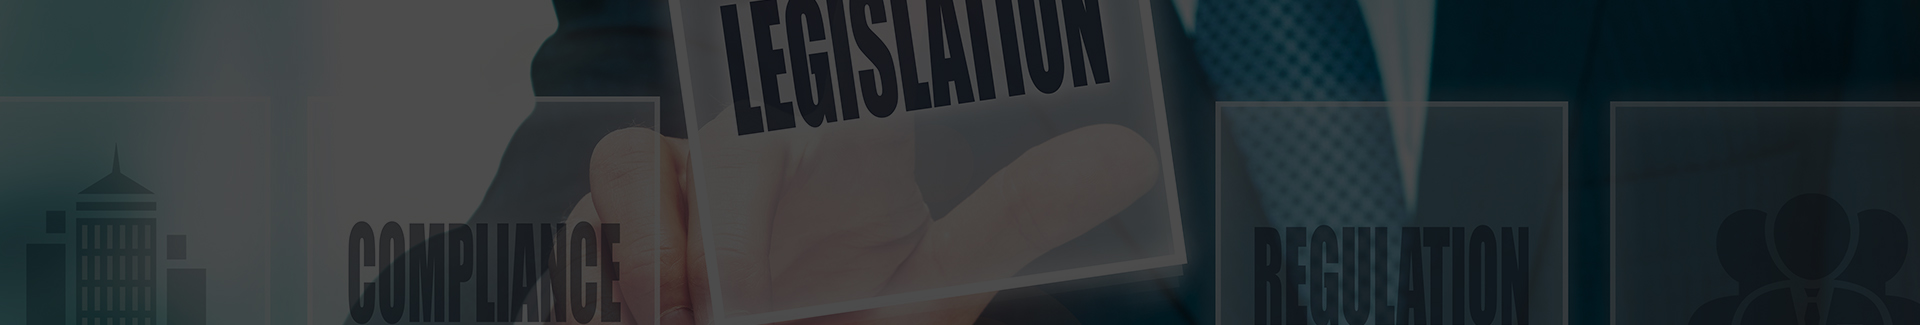 banner_legislation.jpg